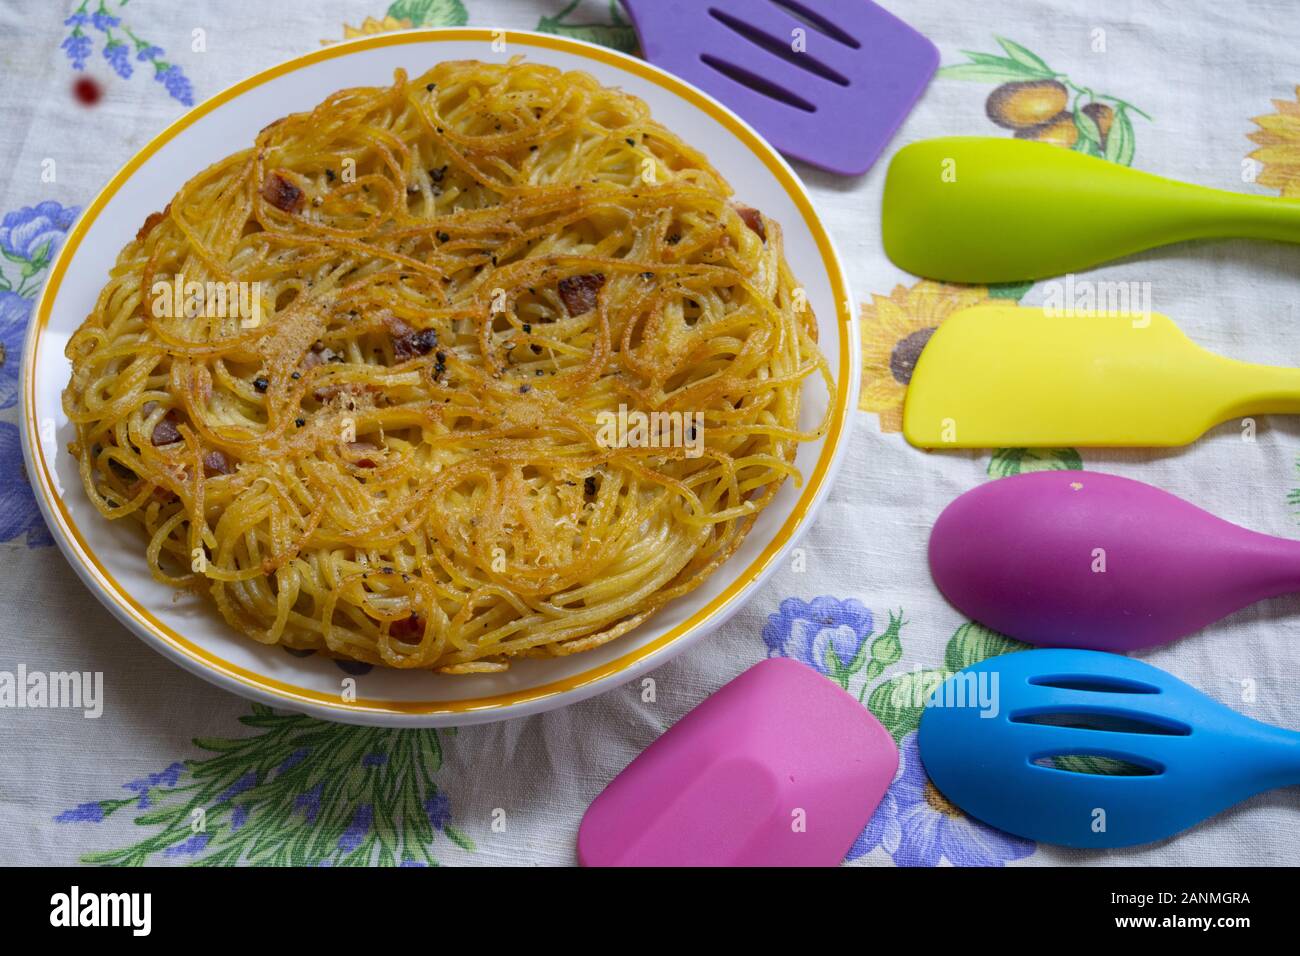 Frittata spaghetti dans un plat près de balanciers couleur Banque D'Images